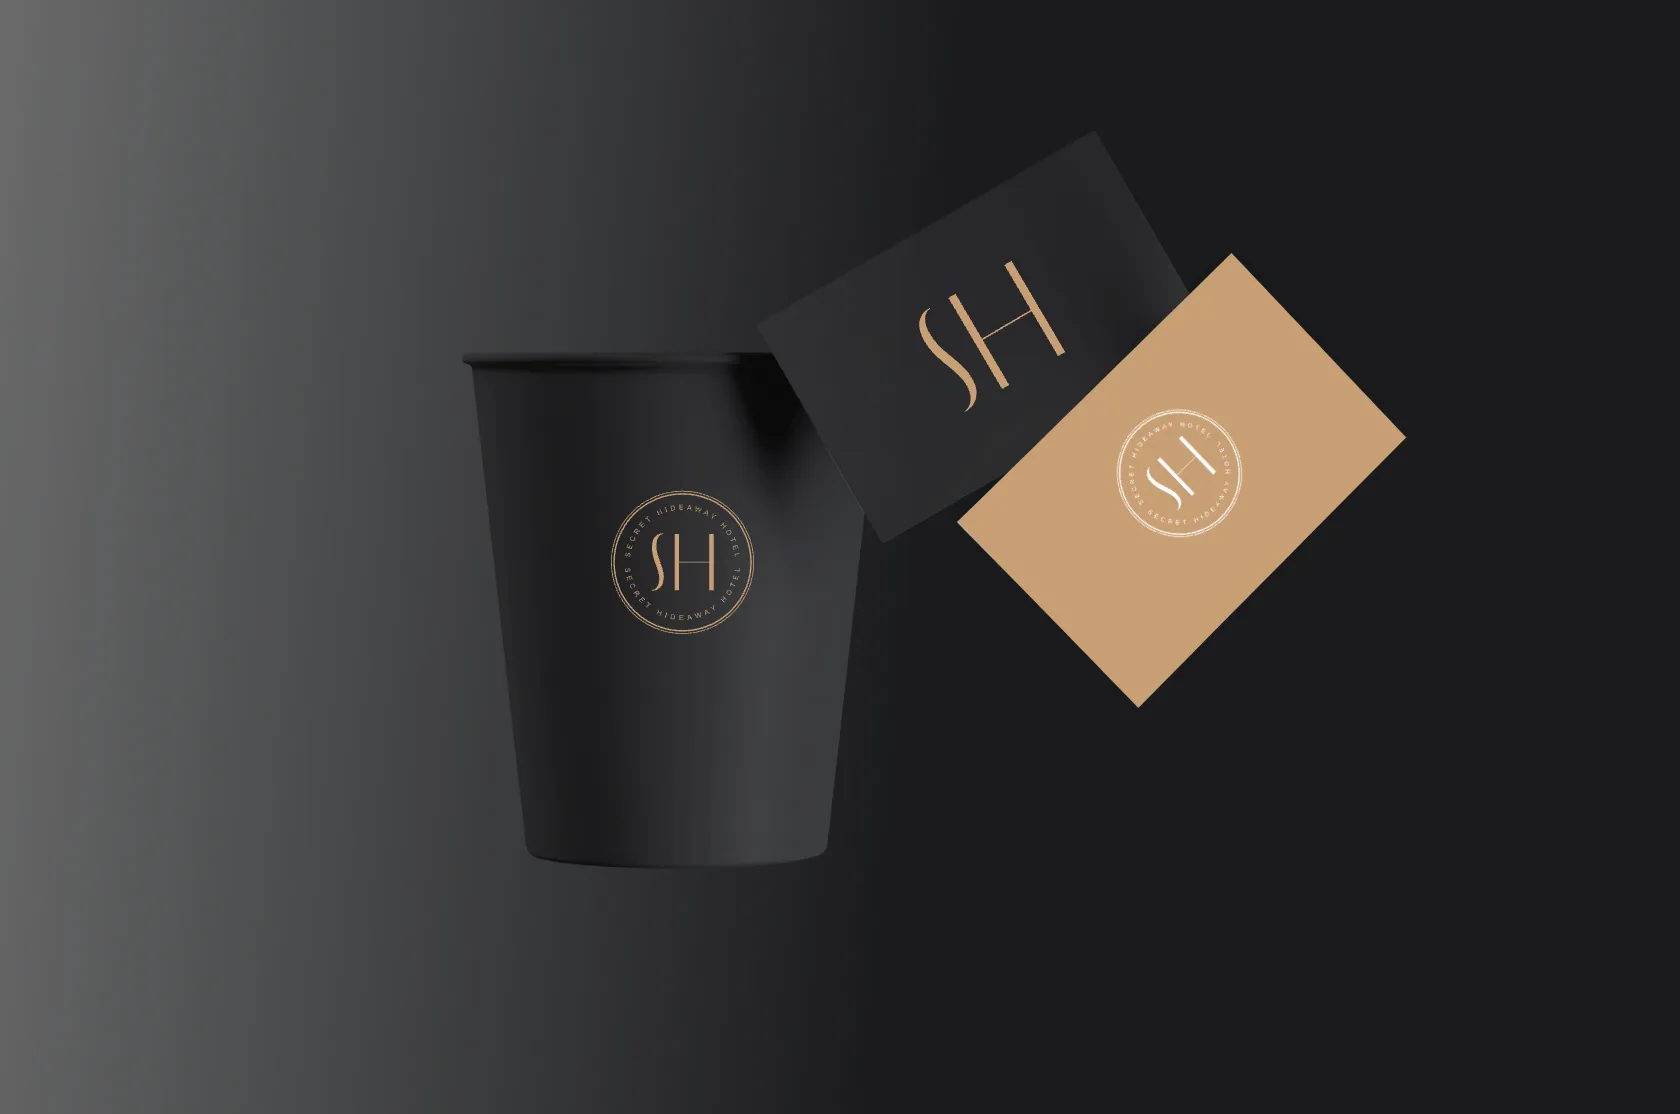 Hotel Secret Hideaway branded coffee mug